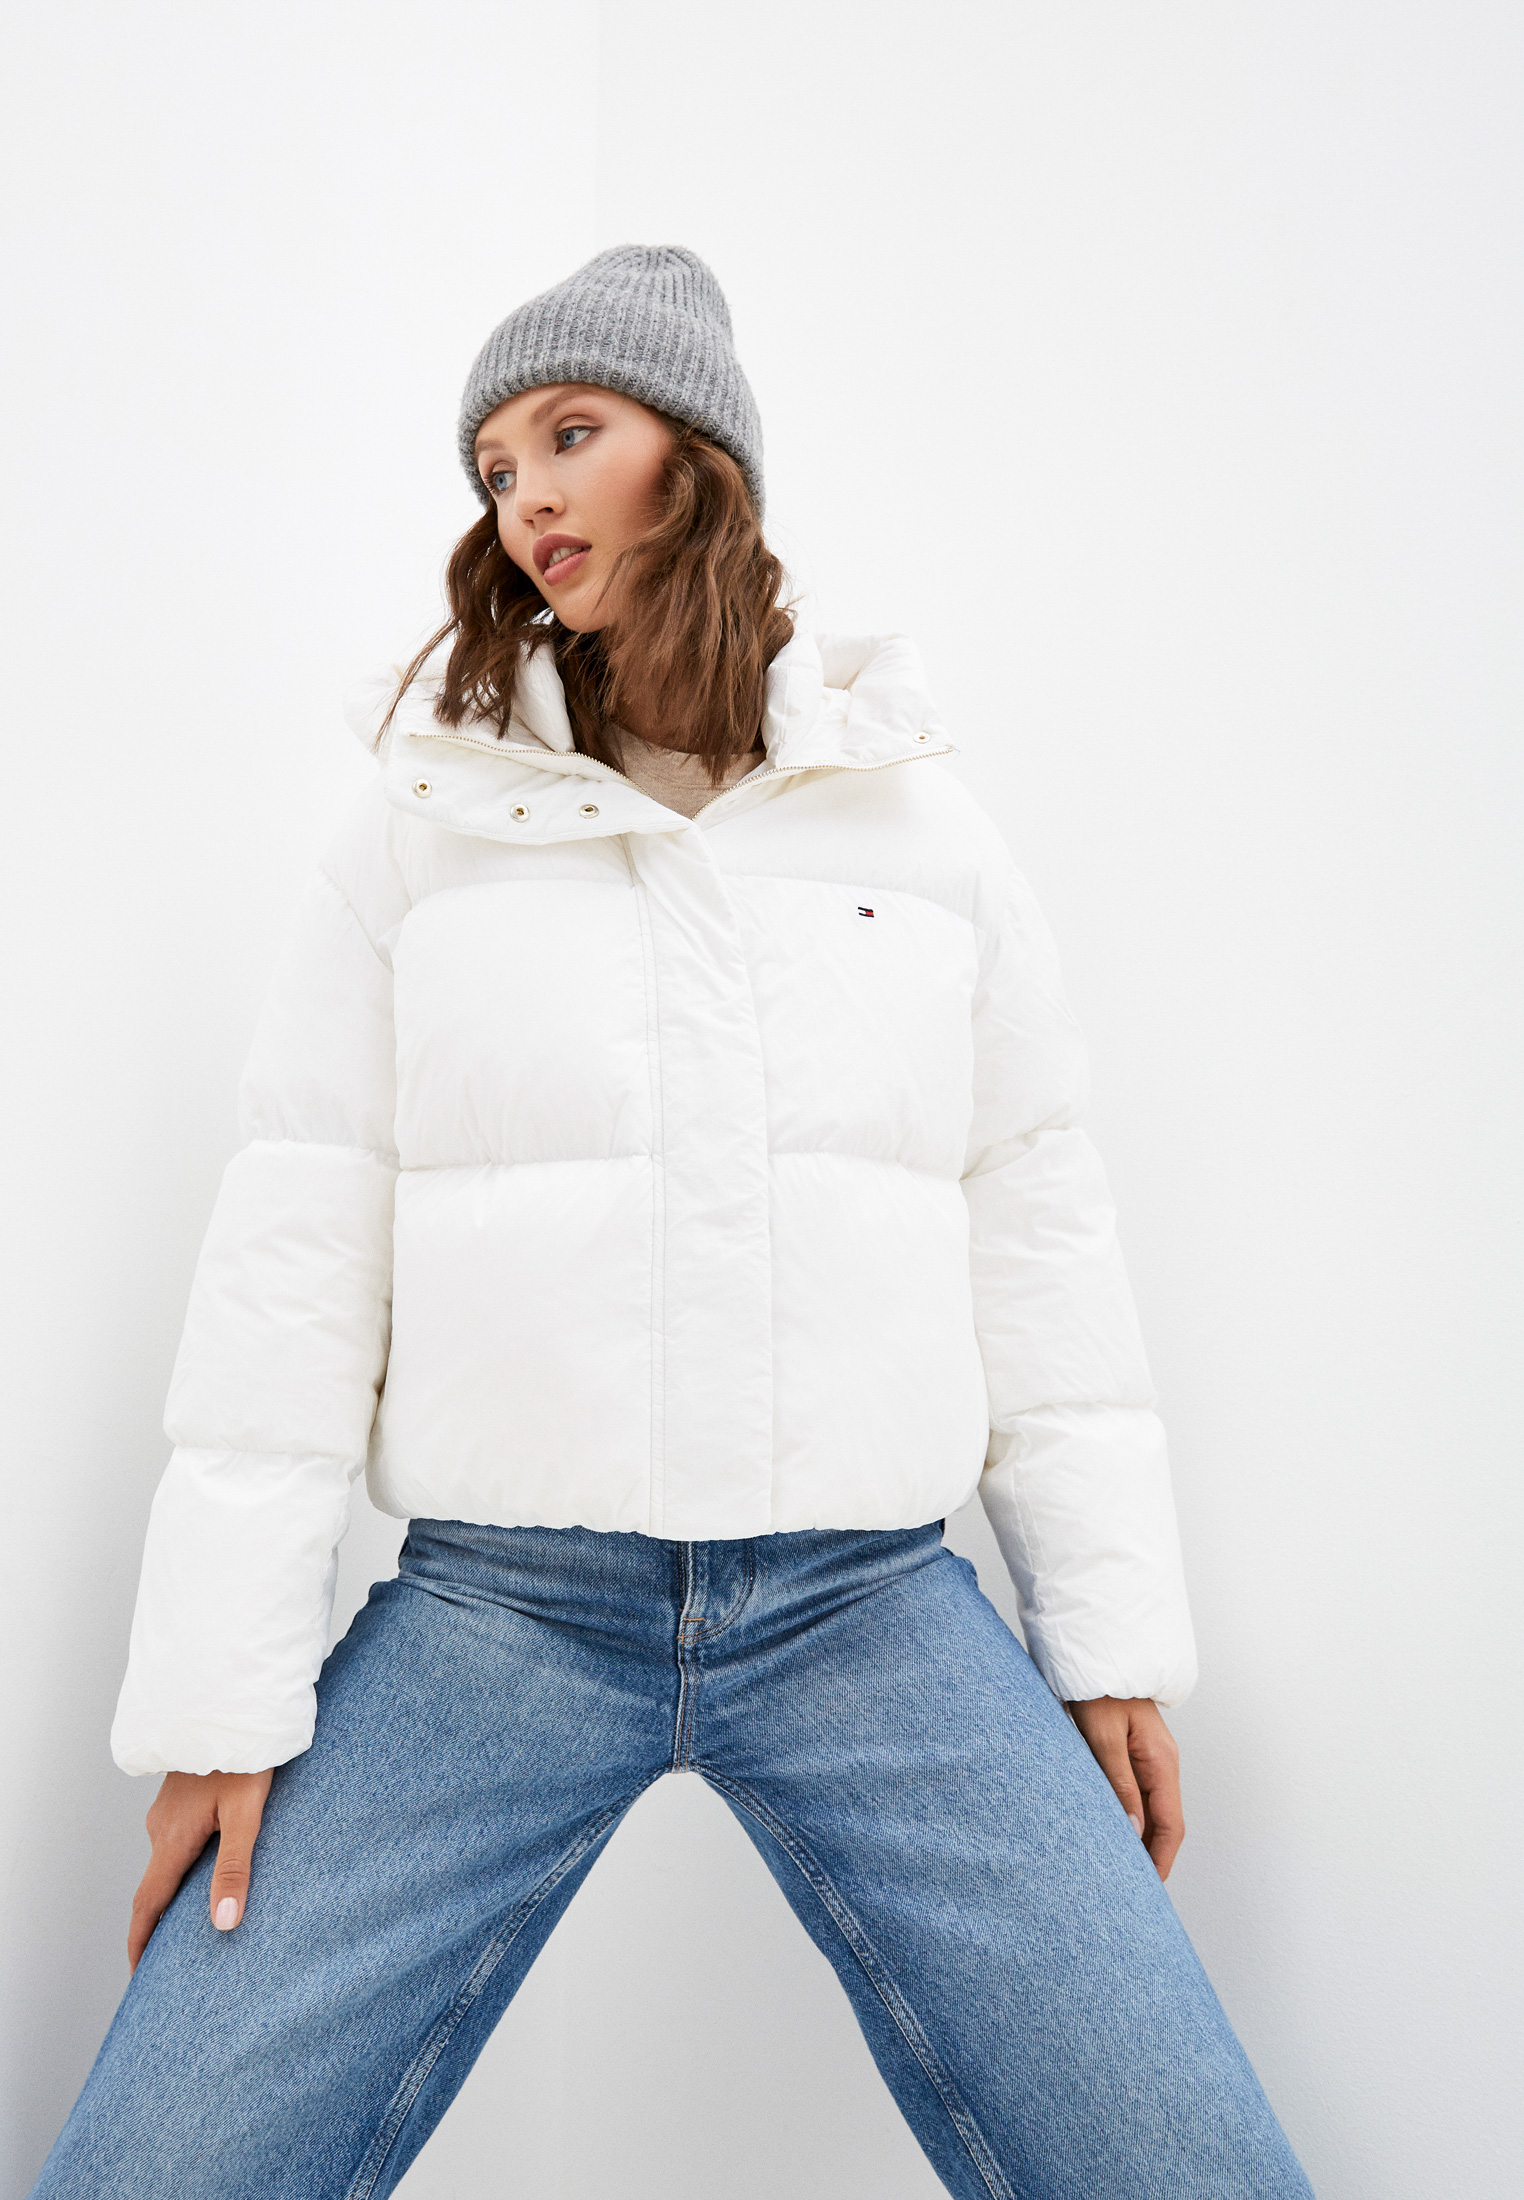 Утепленная куртка женская Tommy Hilfiger (Томми Хилфигер) WW0WW29933 цвет  белый купить за 33990 руб.